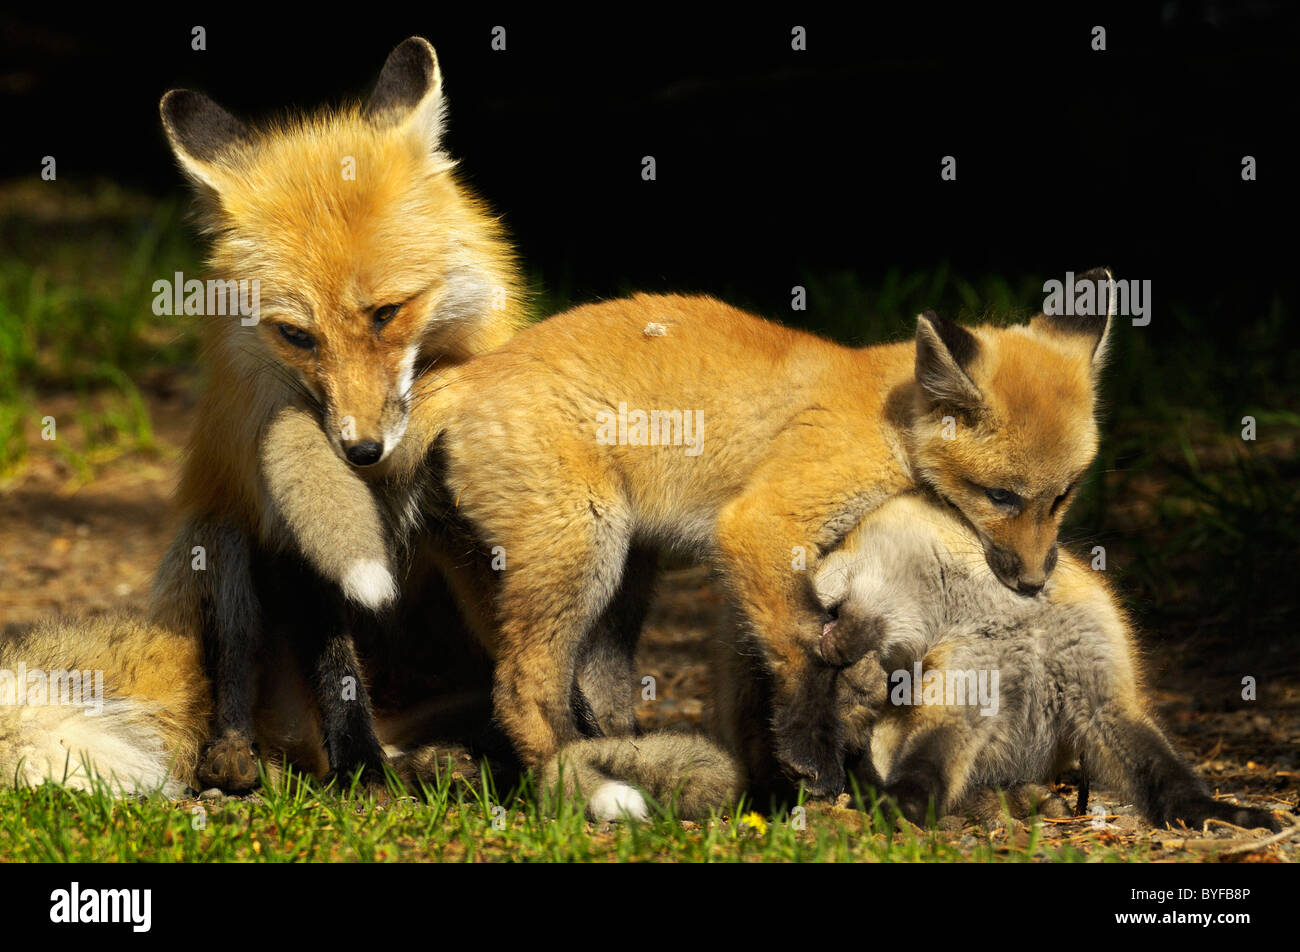 Fox family at play. Stock Photo